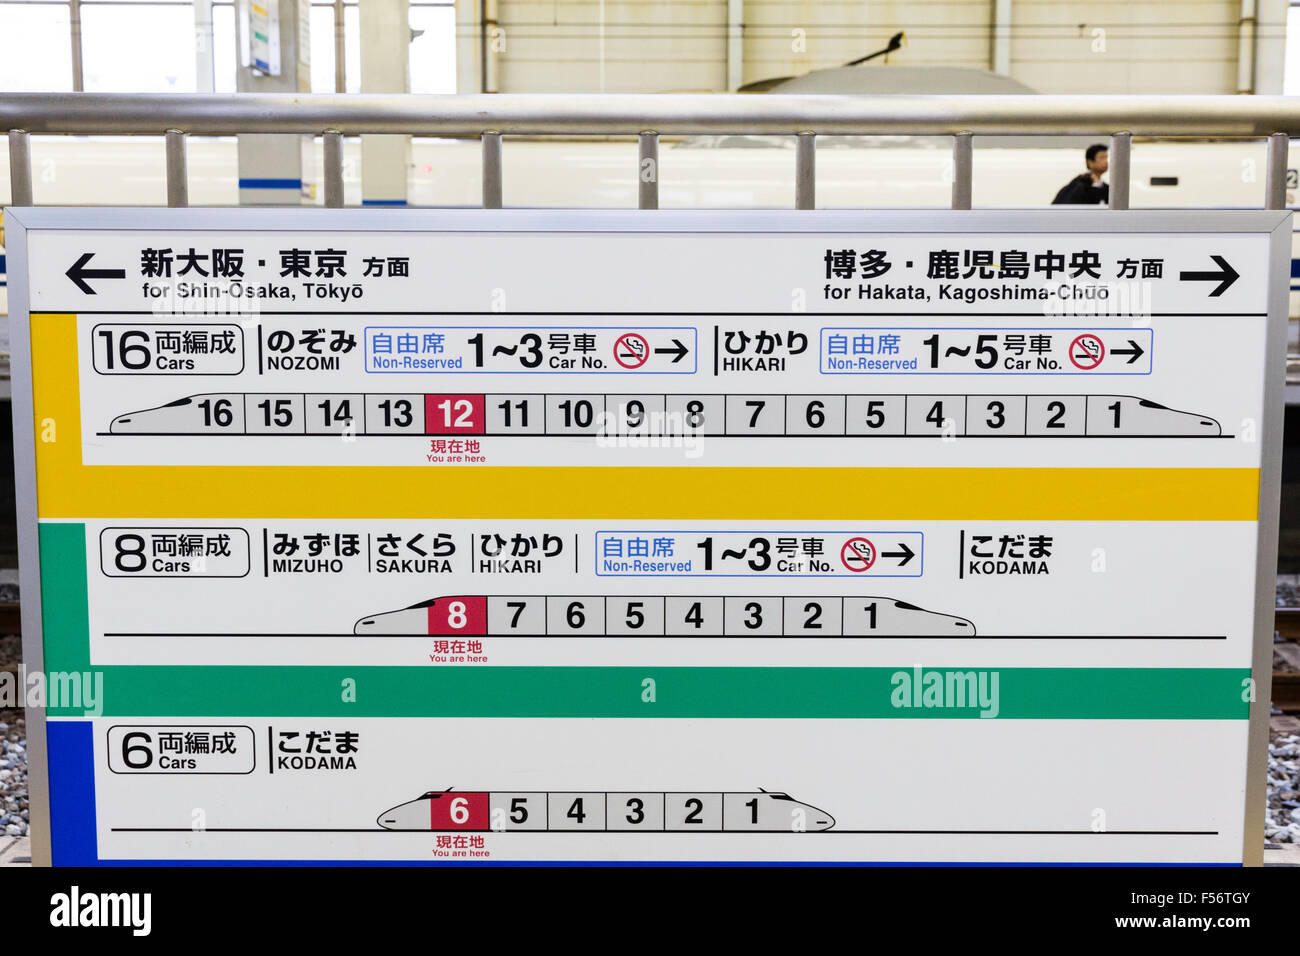 Il Giappone. Lo Shinkansen, bullet train, schema dei diversi formati di ogni tipo di treno con numeri di auto per Nozomi, Kodoma, Hikari, Sakura e Mizuho. Foto Stock